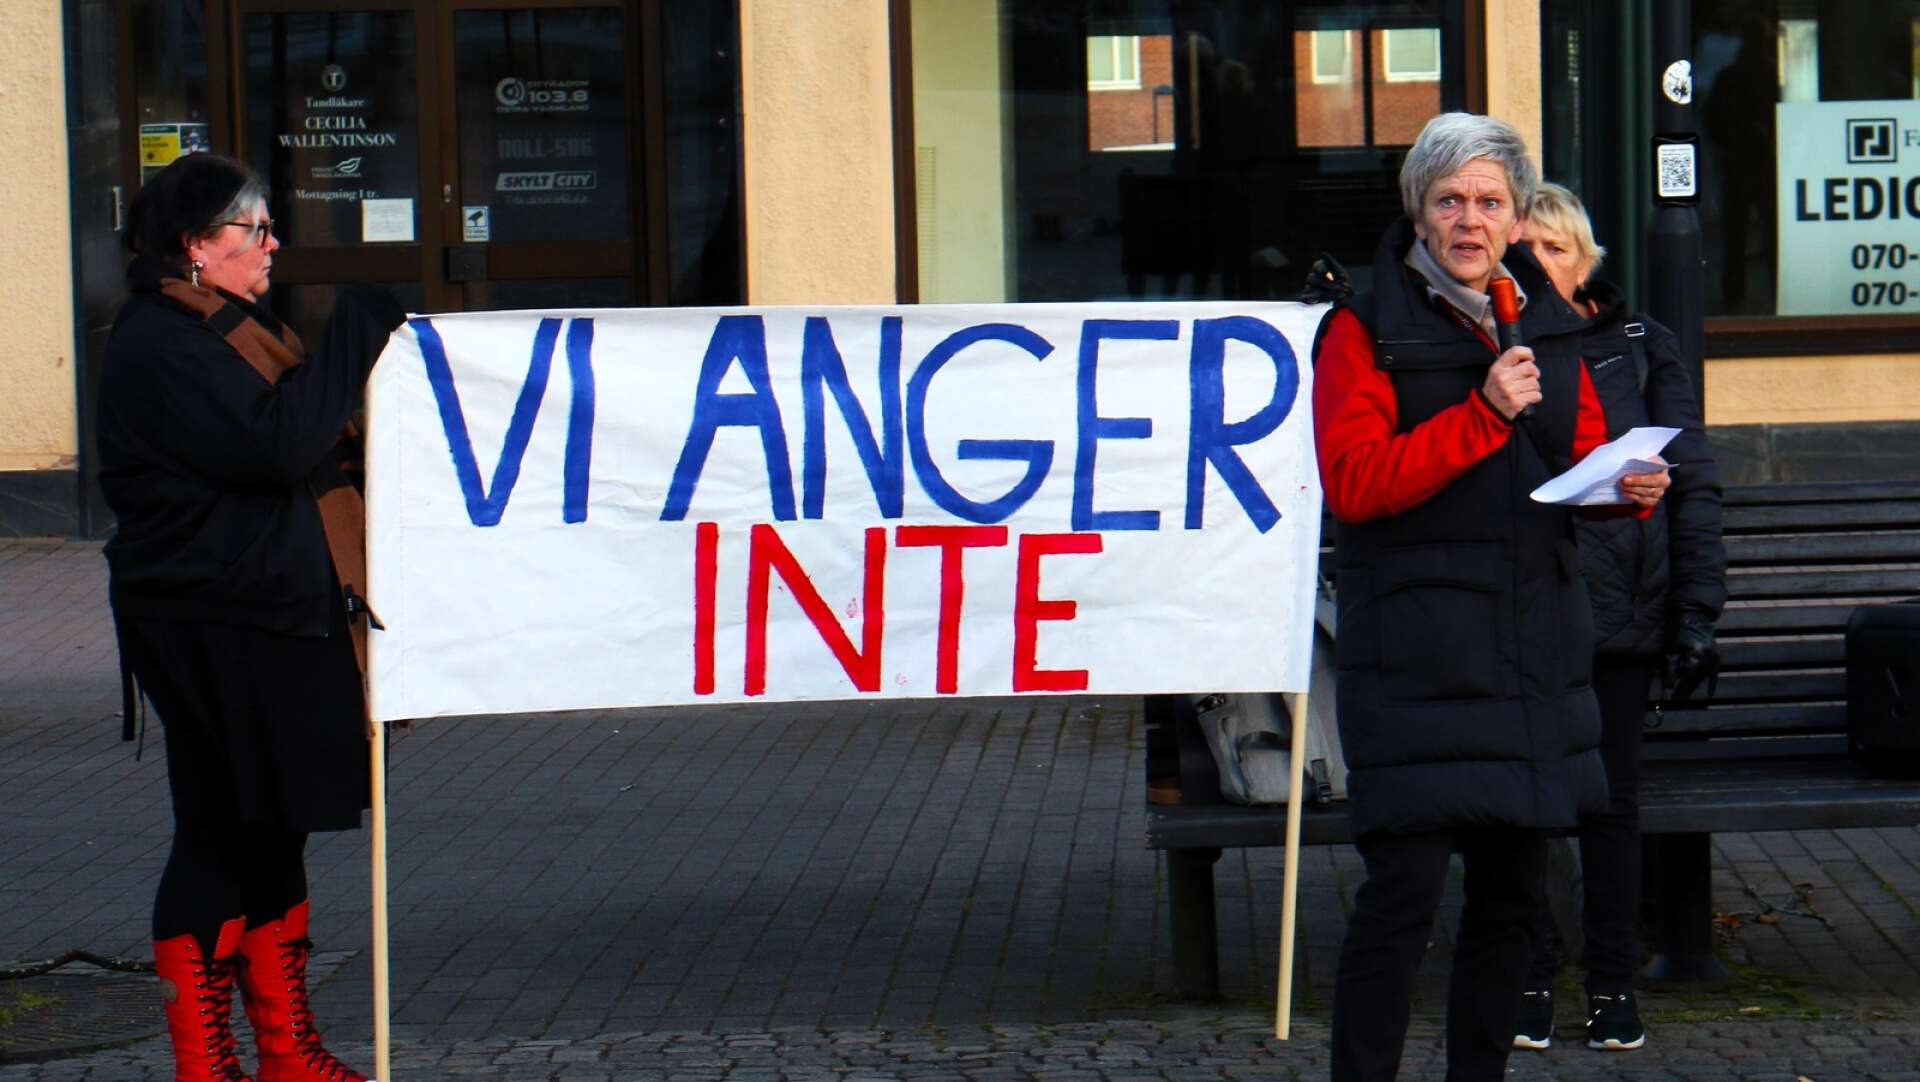  Lena Hagström från Kommunal pratade på manifestationen, Vi anger inte. 